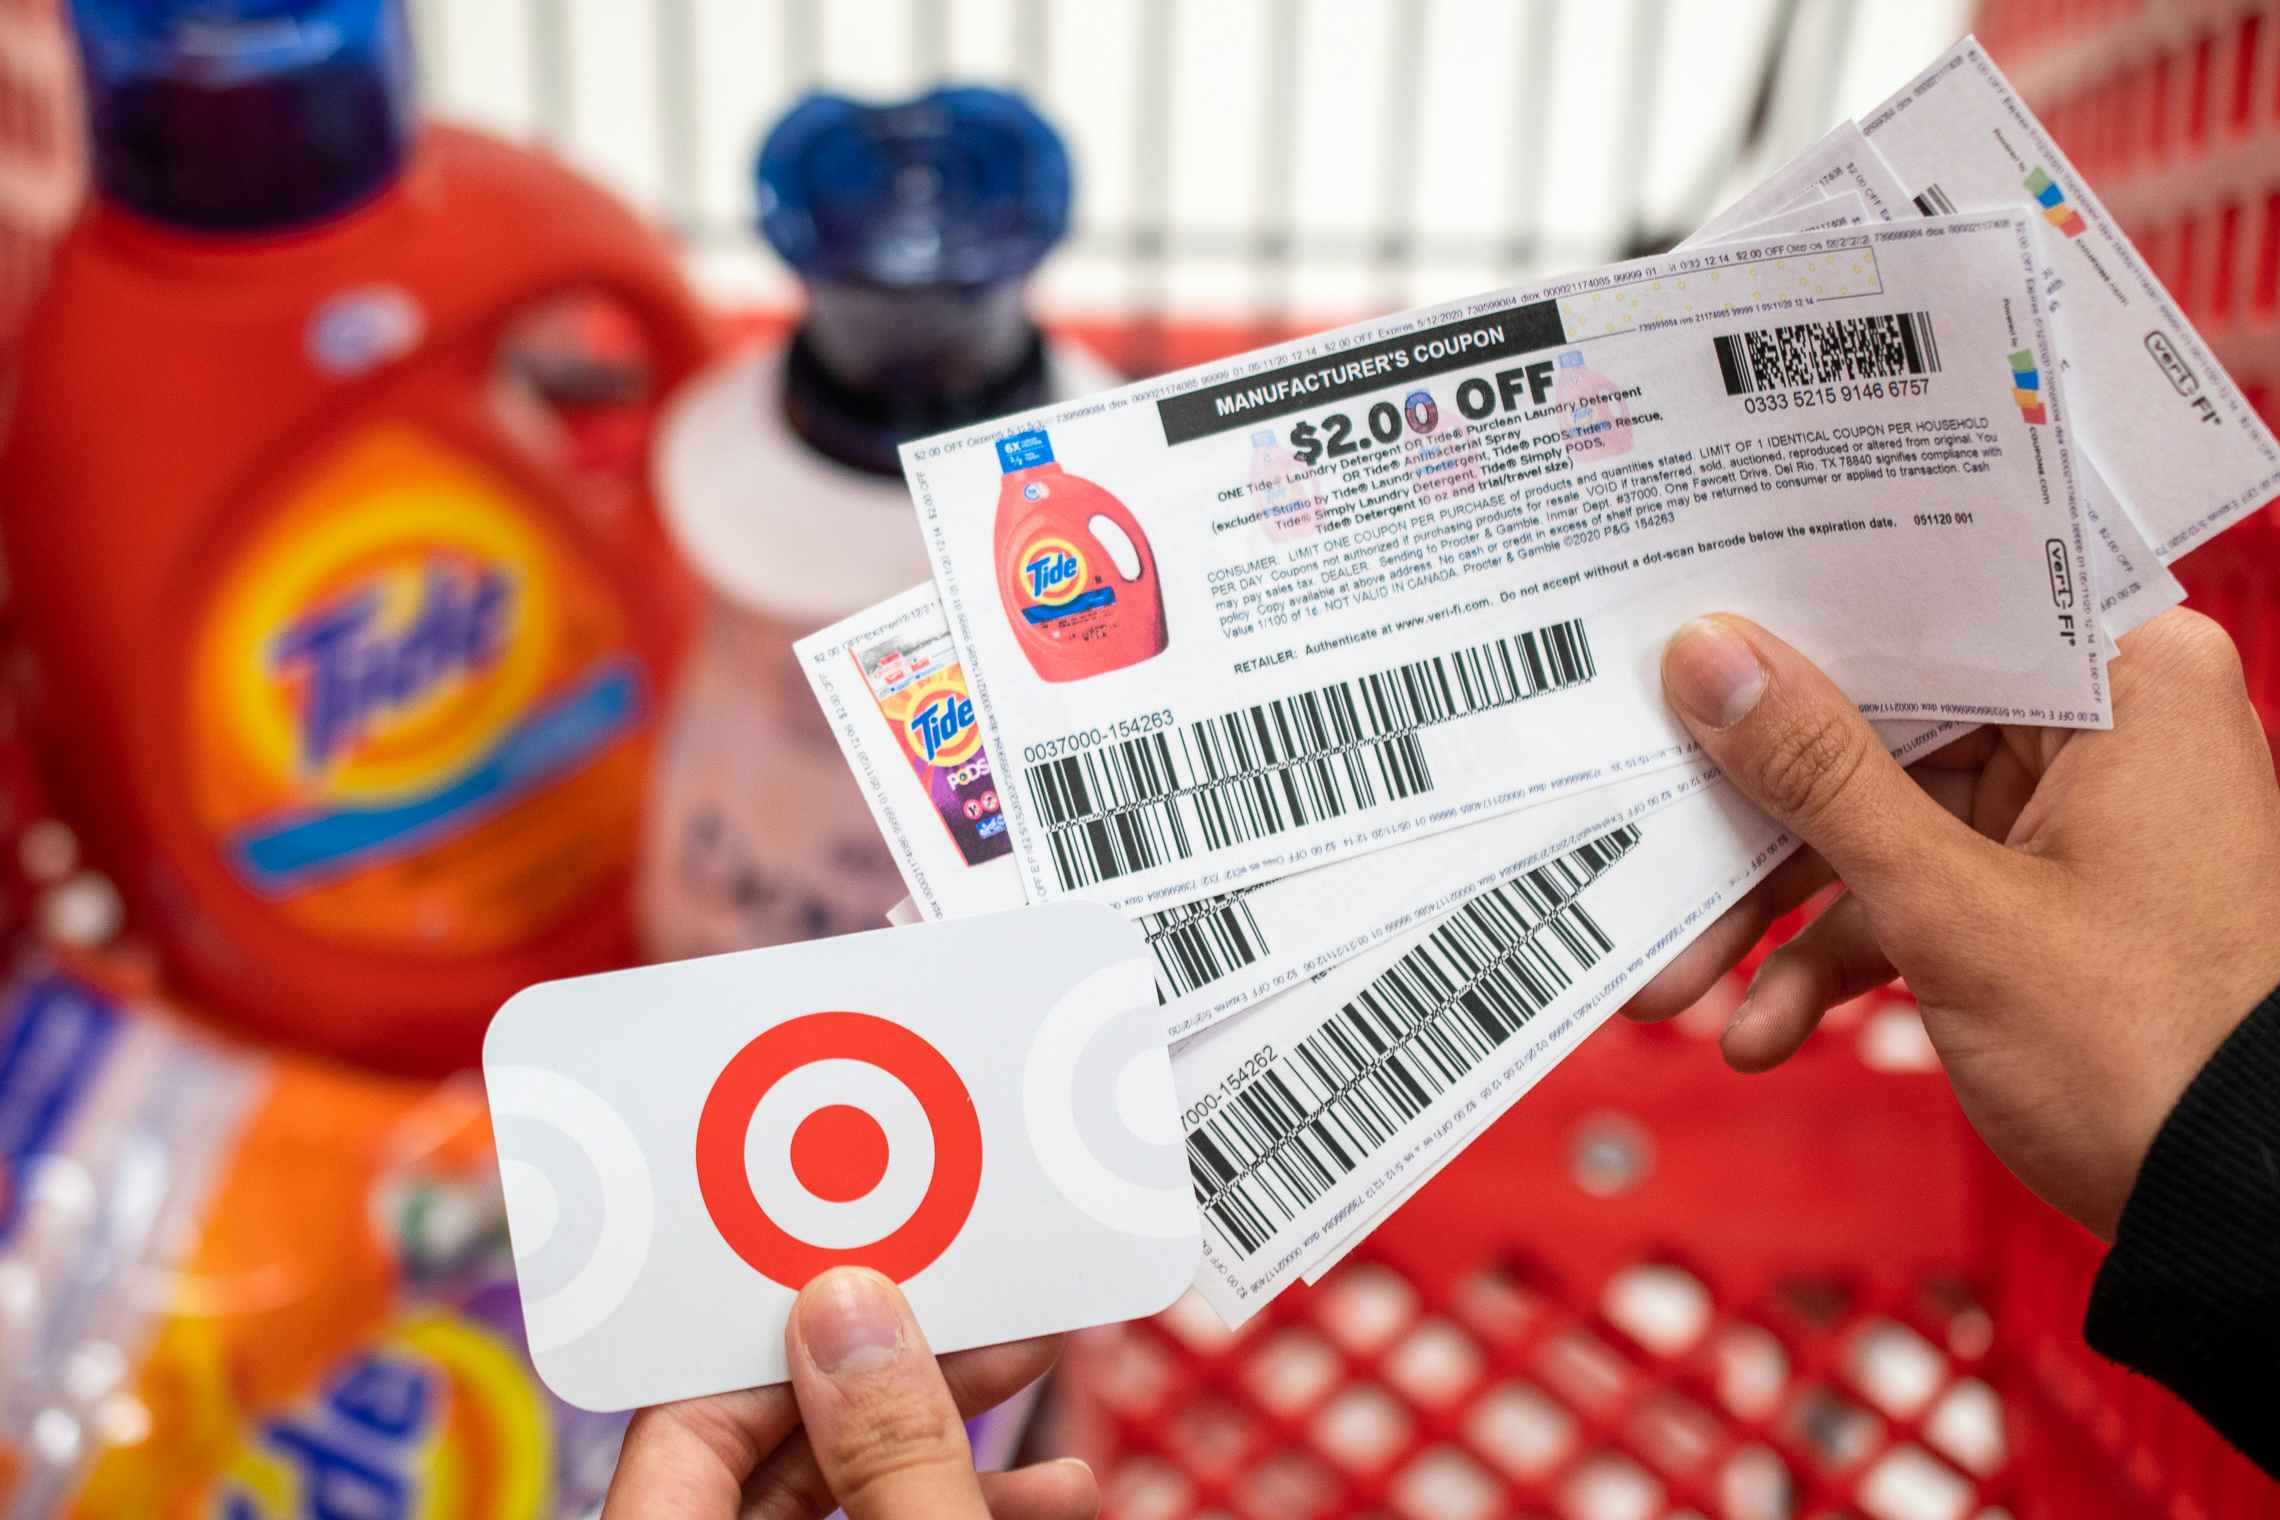 6 Deals at Target under $2💰 #targetdeals #targetcouponing #targetcoup